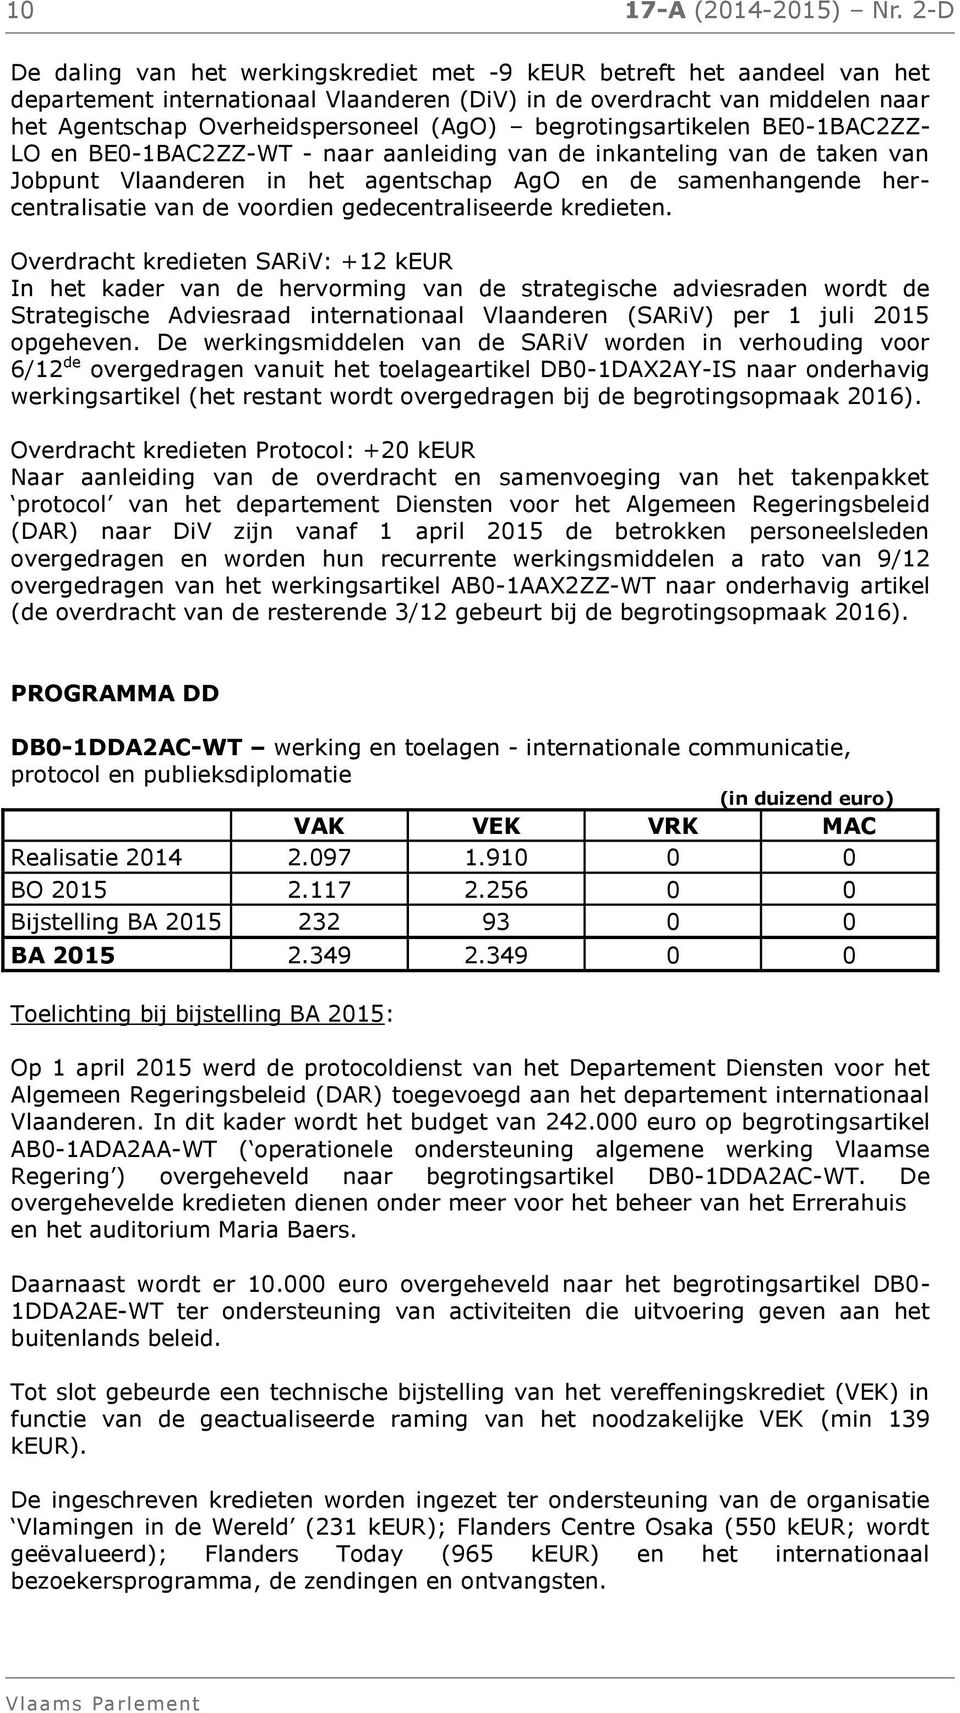 begrotingsartikelen BE0-1BAC2ZZ- LO en BE0-1BAC2ZZ-WT - naar aanleiding van de inkanteling van de taken van Jobpunt Vlaanderen in het agentschap AgO en de samenhangende hercentralisatie van de